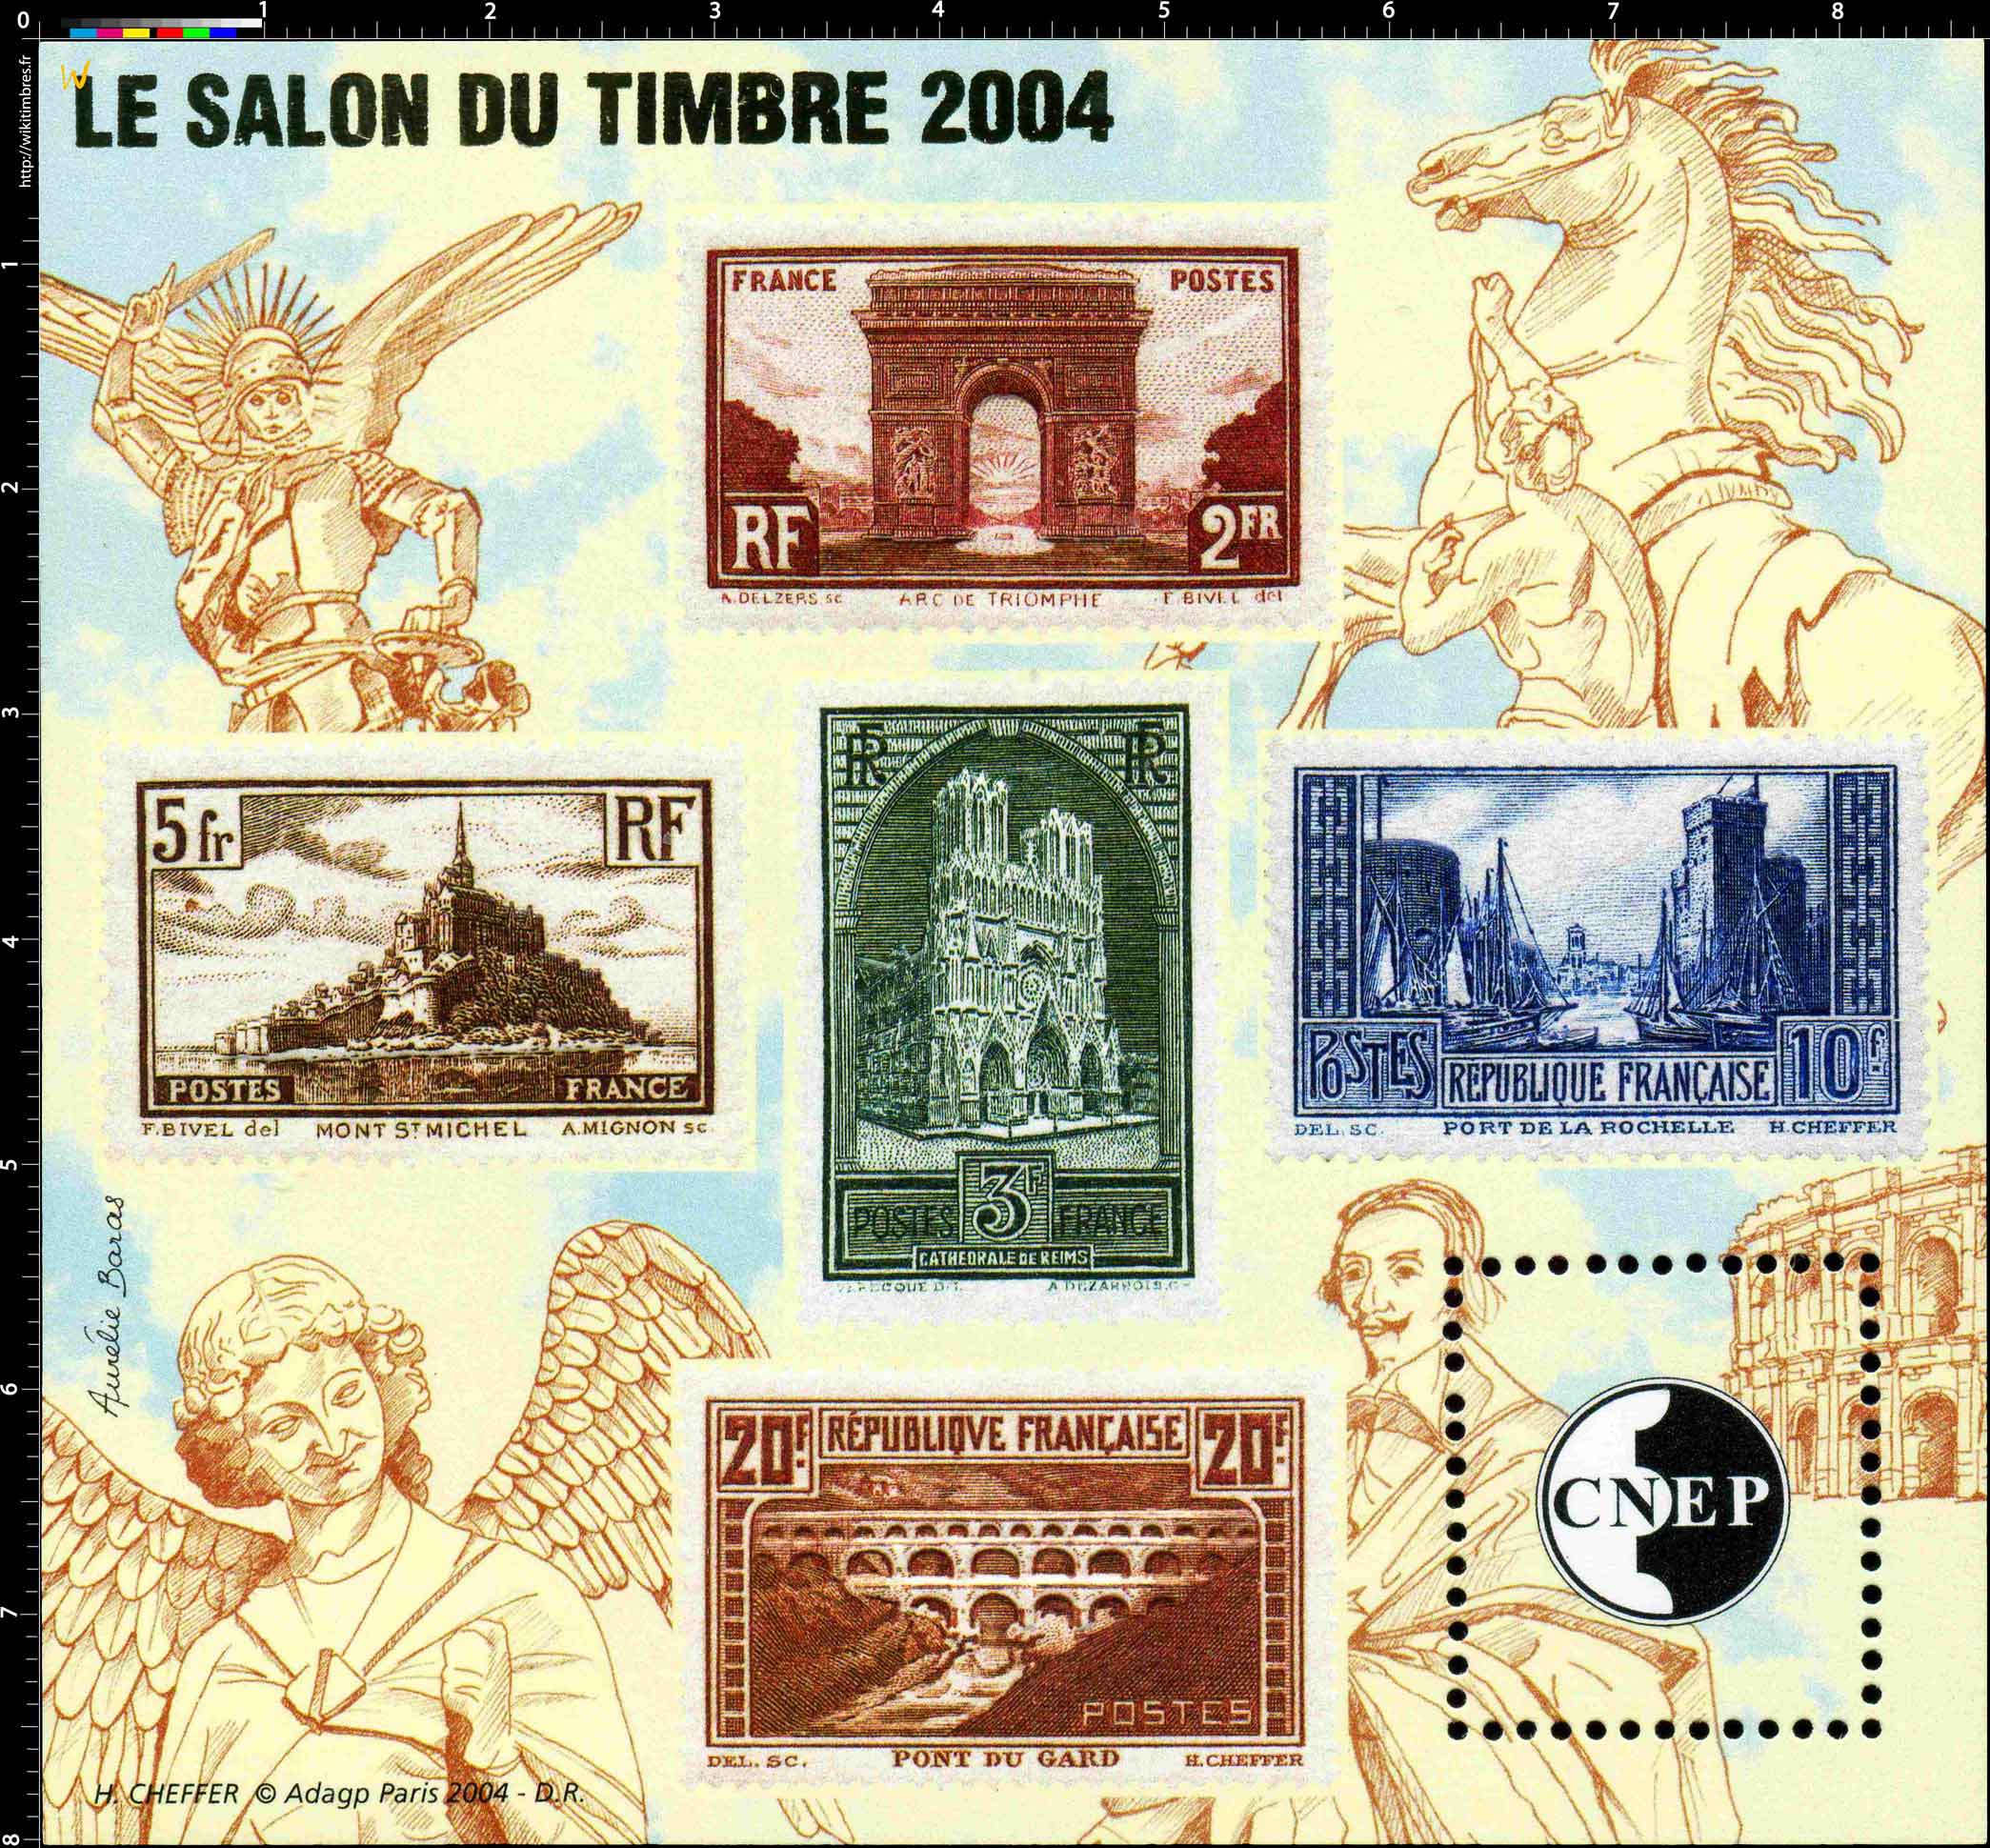 2004 Le salon du timbre CNEP